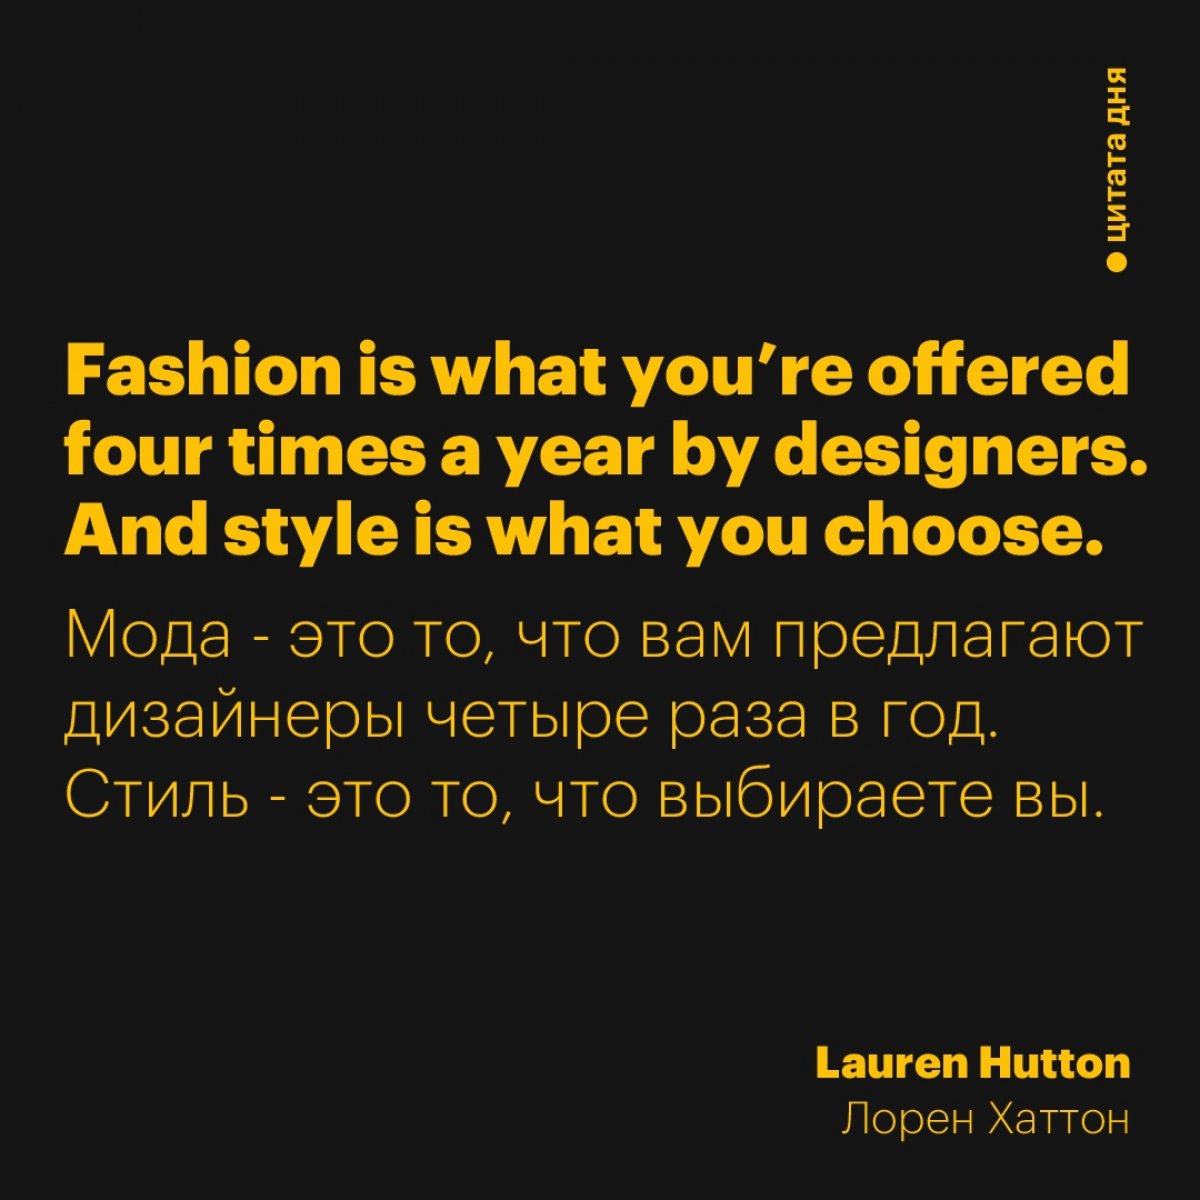 Что для вас важнее: мода или стиль? Насколько это для вас различные вещи? Пишите в комментариях! 👇 Обсудим, разберемся, что к чему 😉⁣